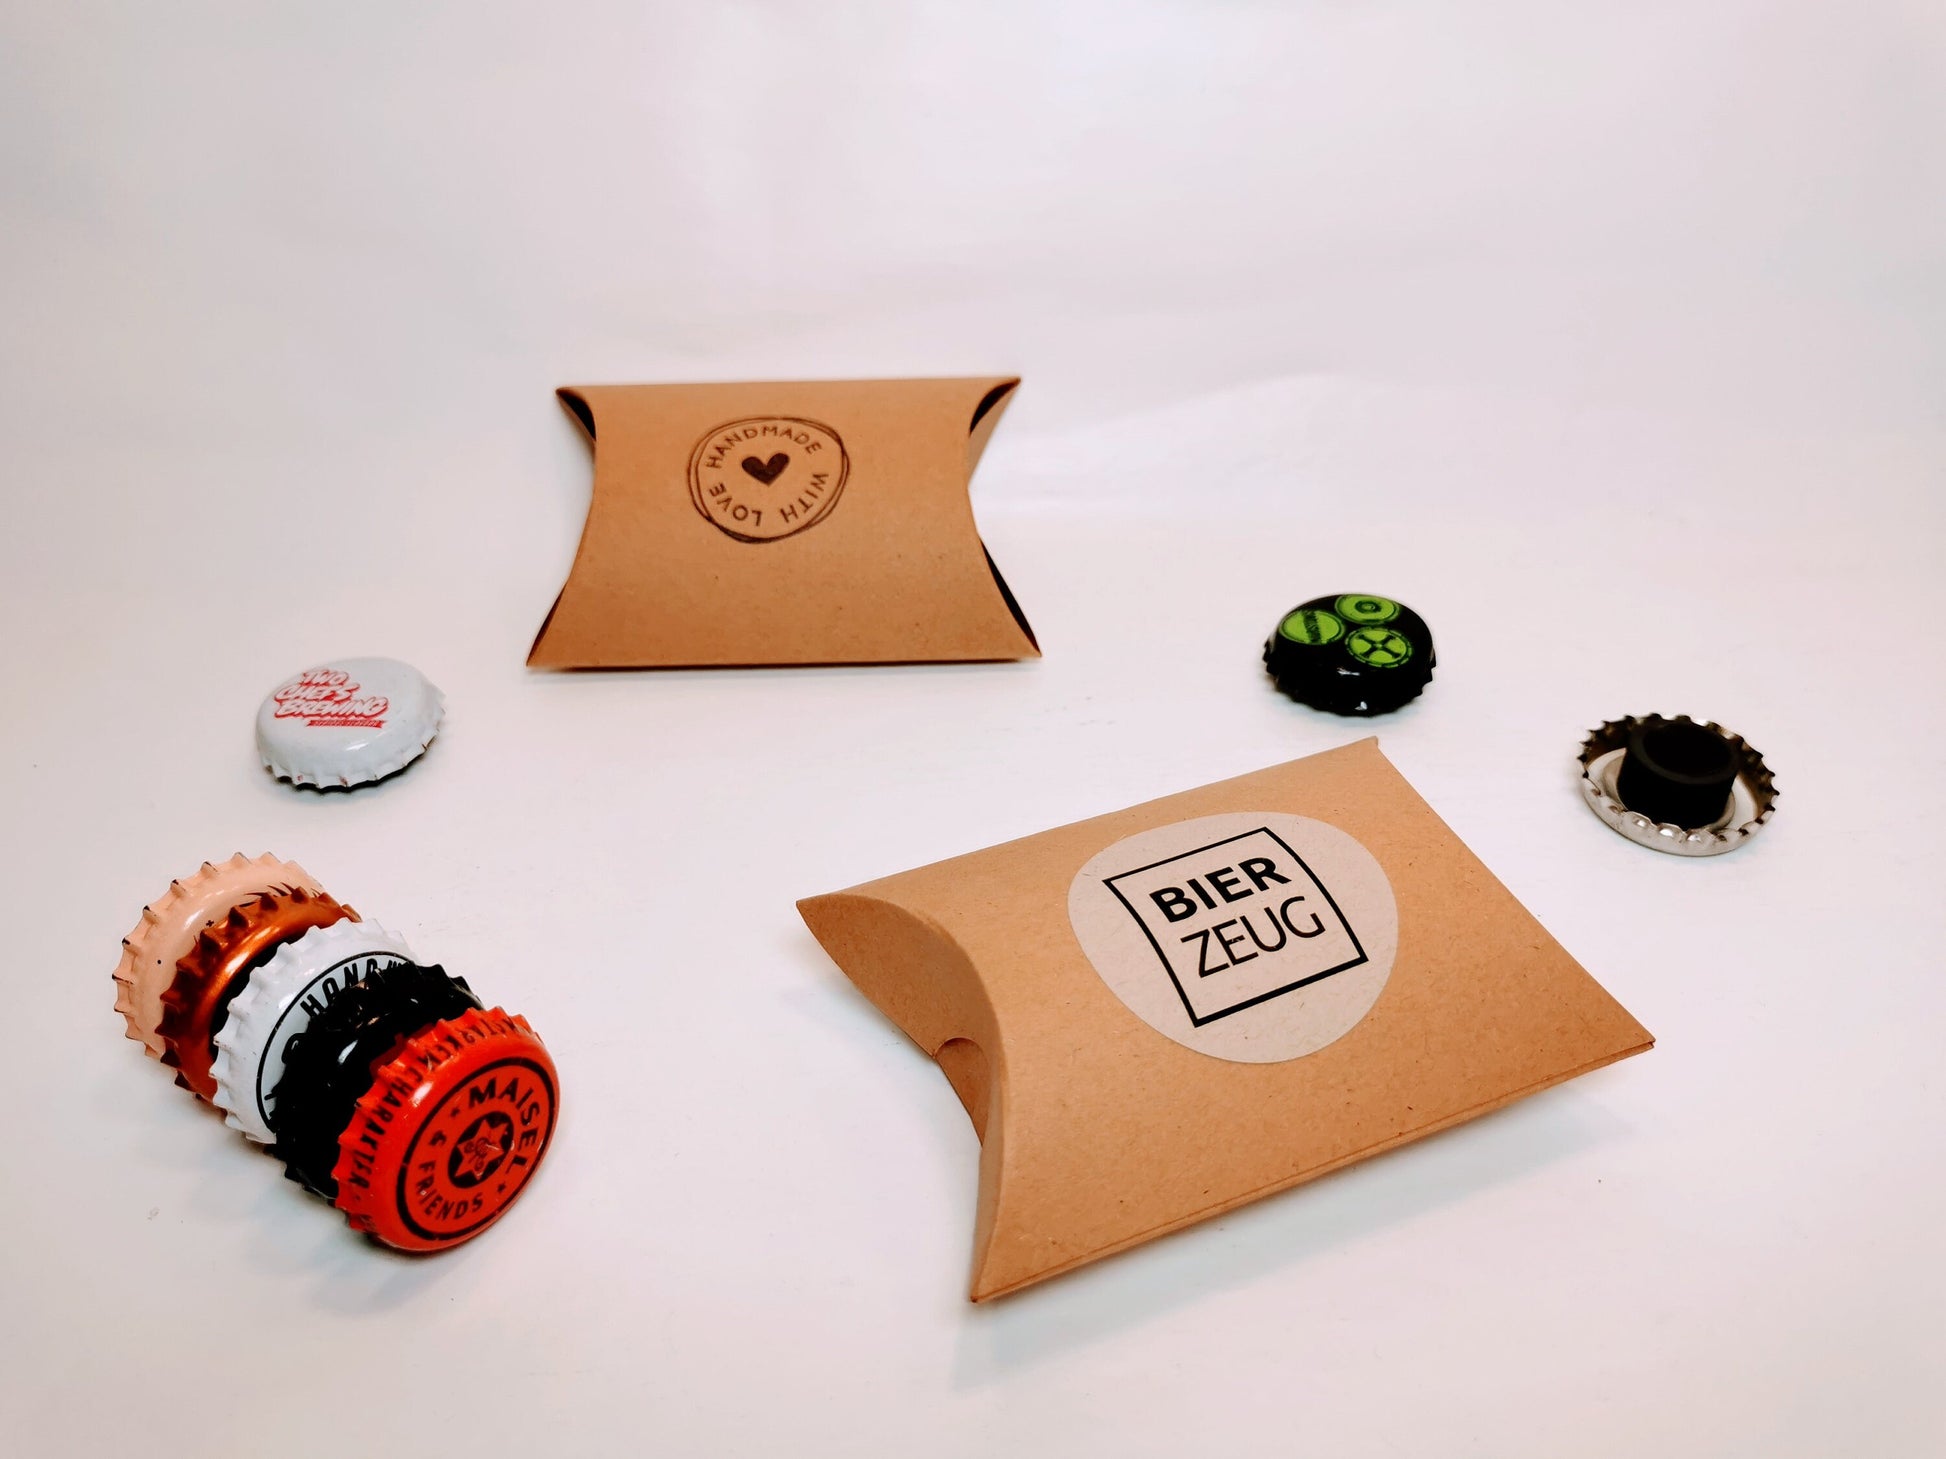 Kronkorken-Magnete für Kühlschrank & Pinnwand - Handgemacht - Upcycling - 5er Geschenk-Set | Craftbeer, Kölsch, Astra, Corona Kronkorken